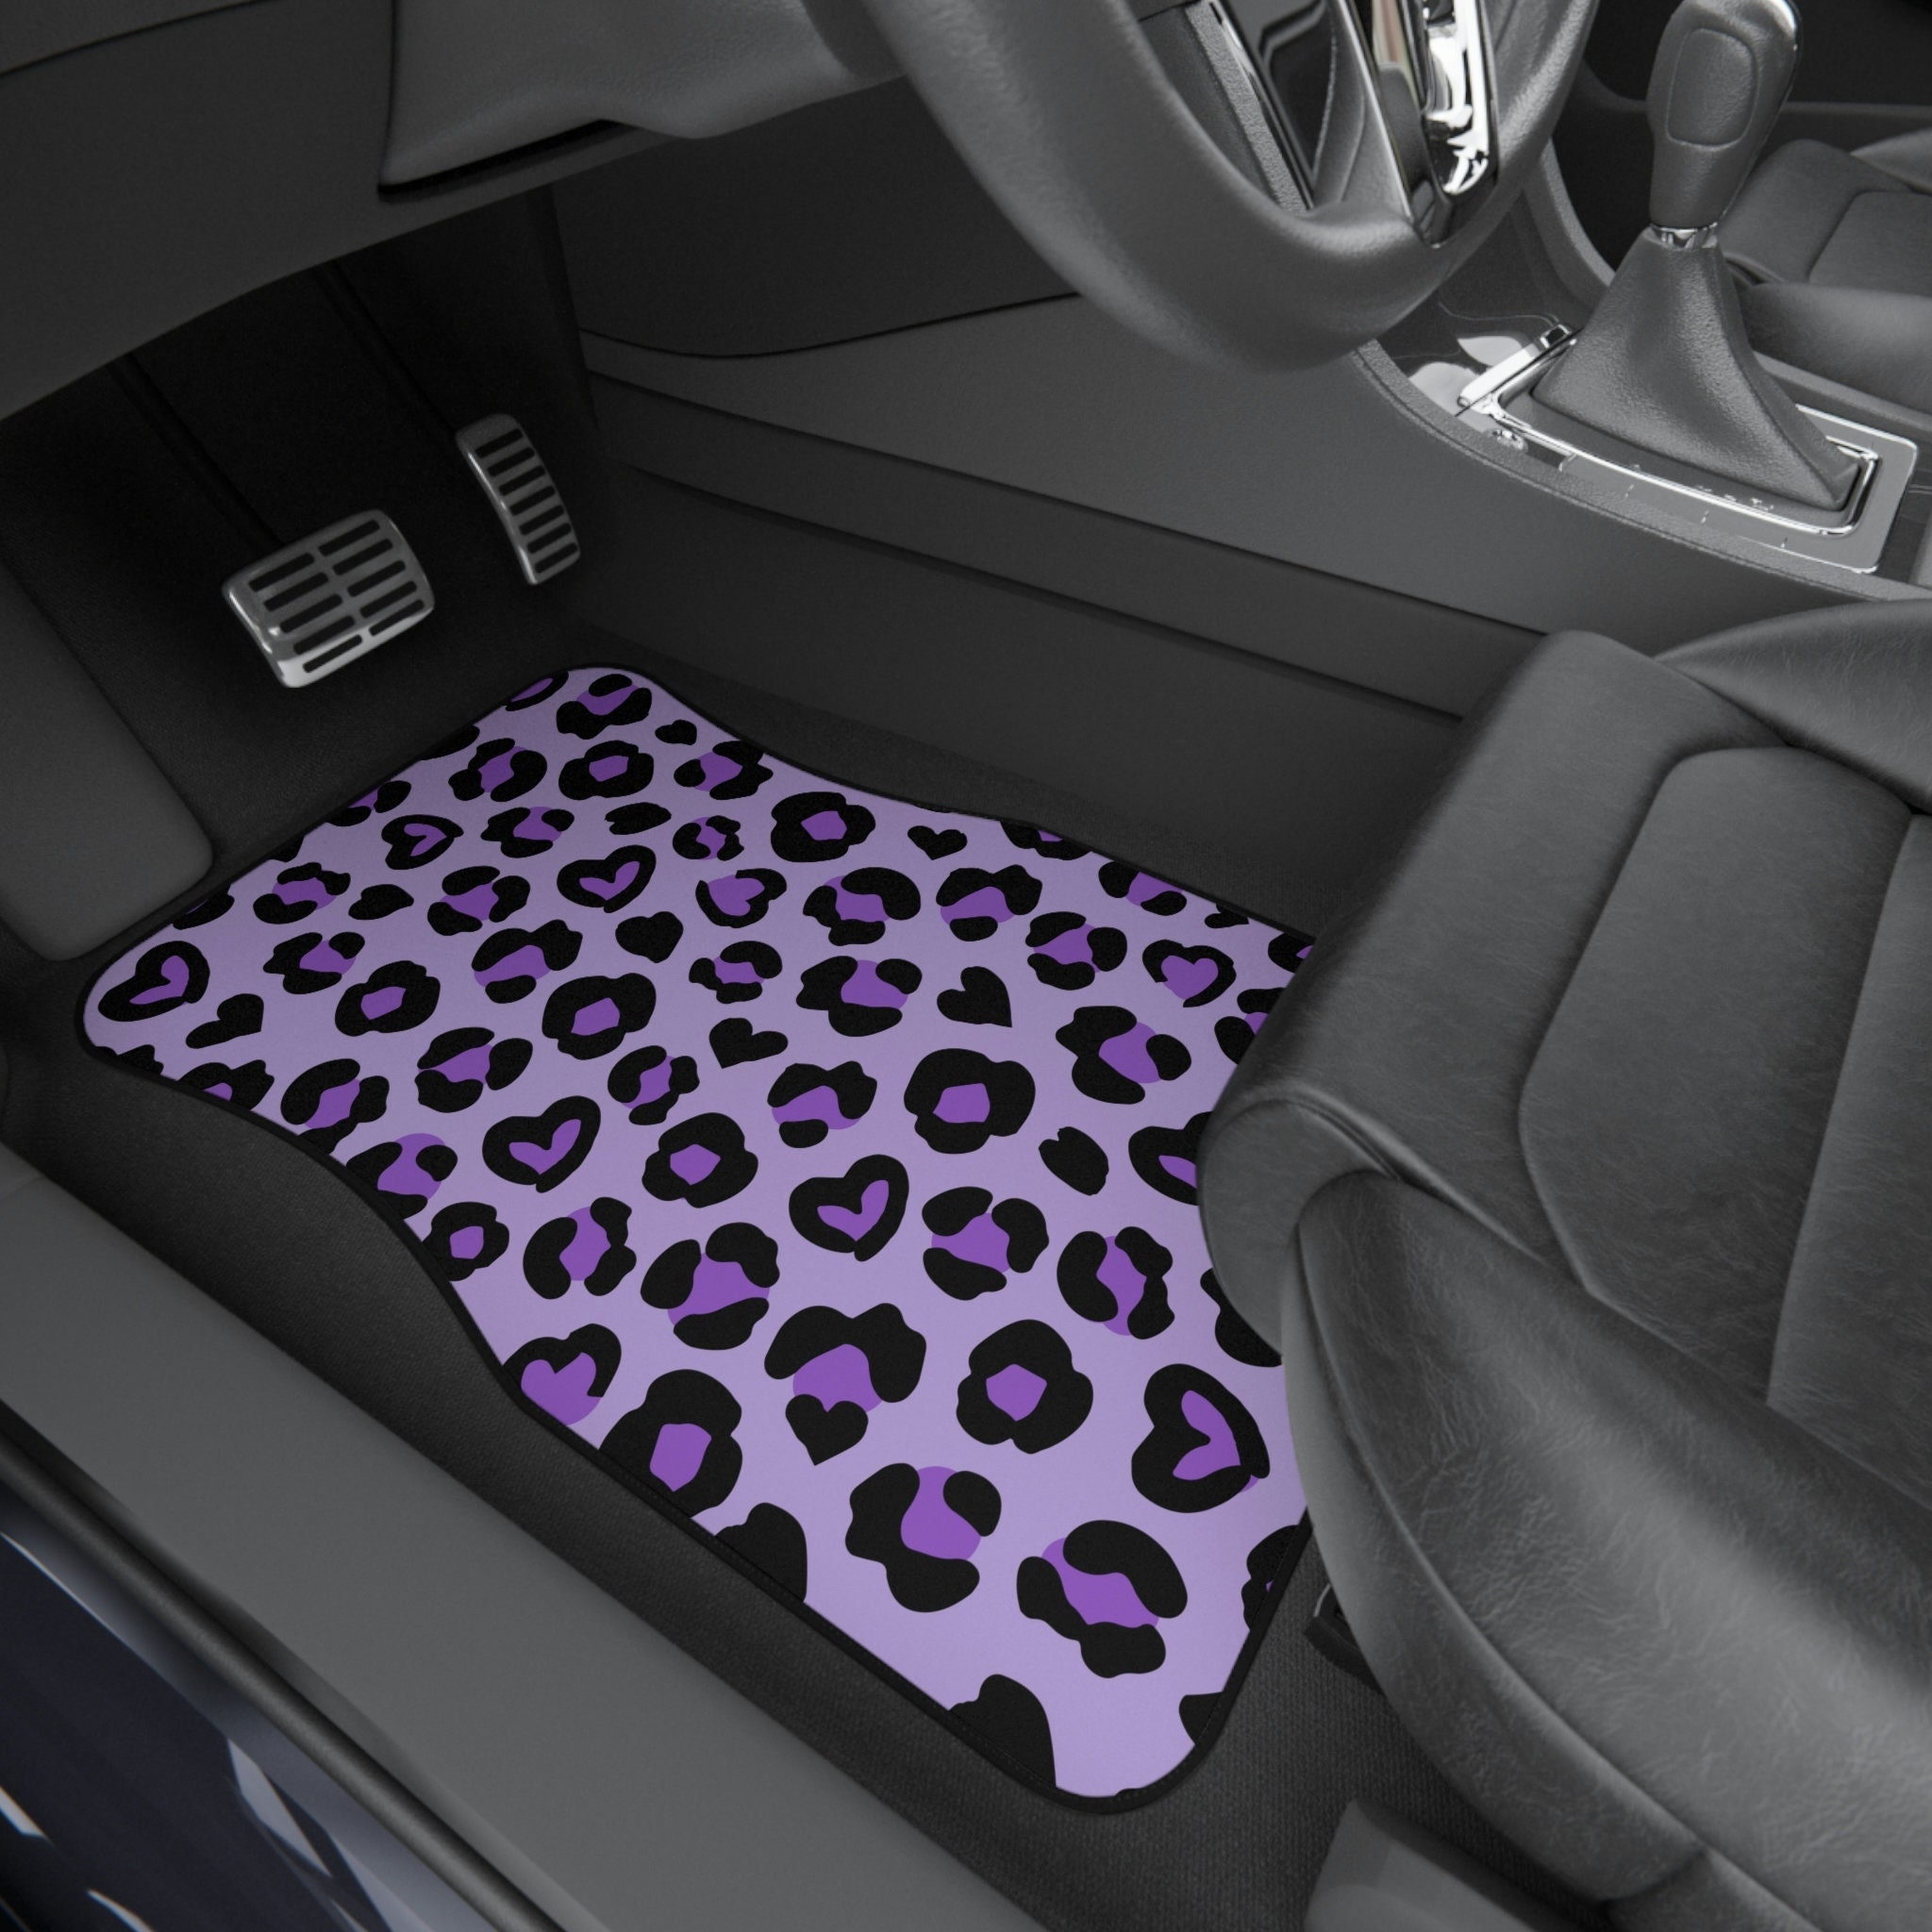 Discover Leopard Print Car Mats,Leopard Print Floor Mats for Car